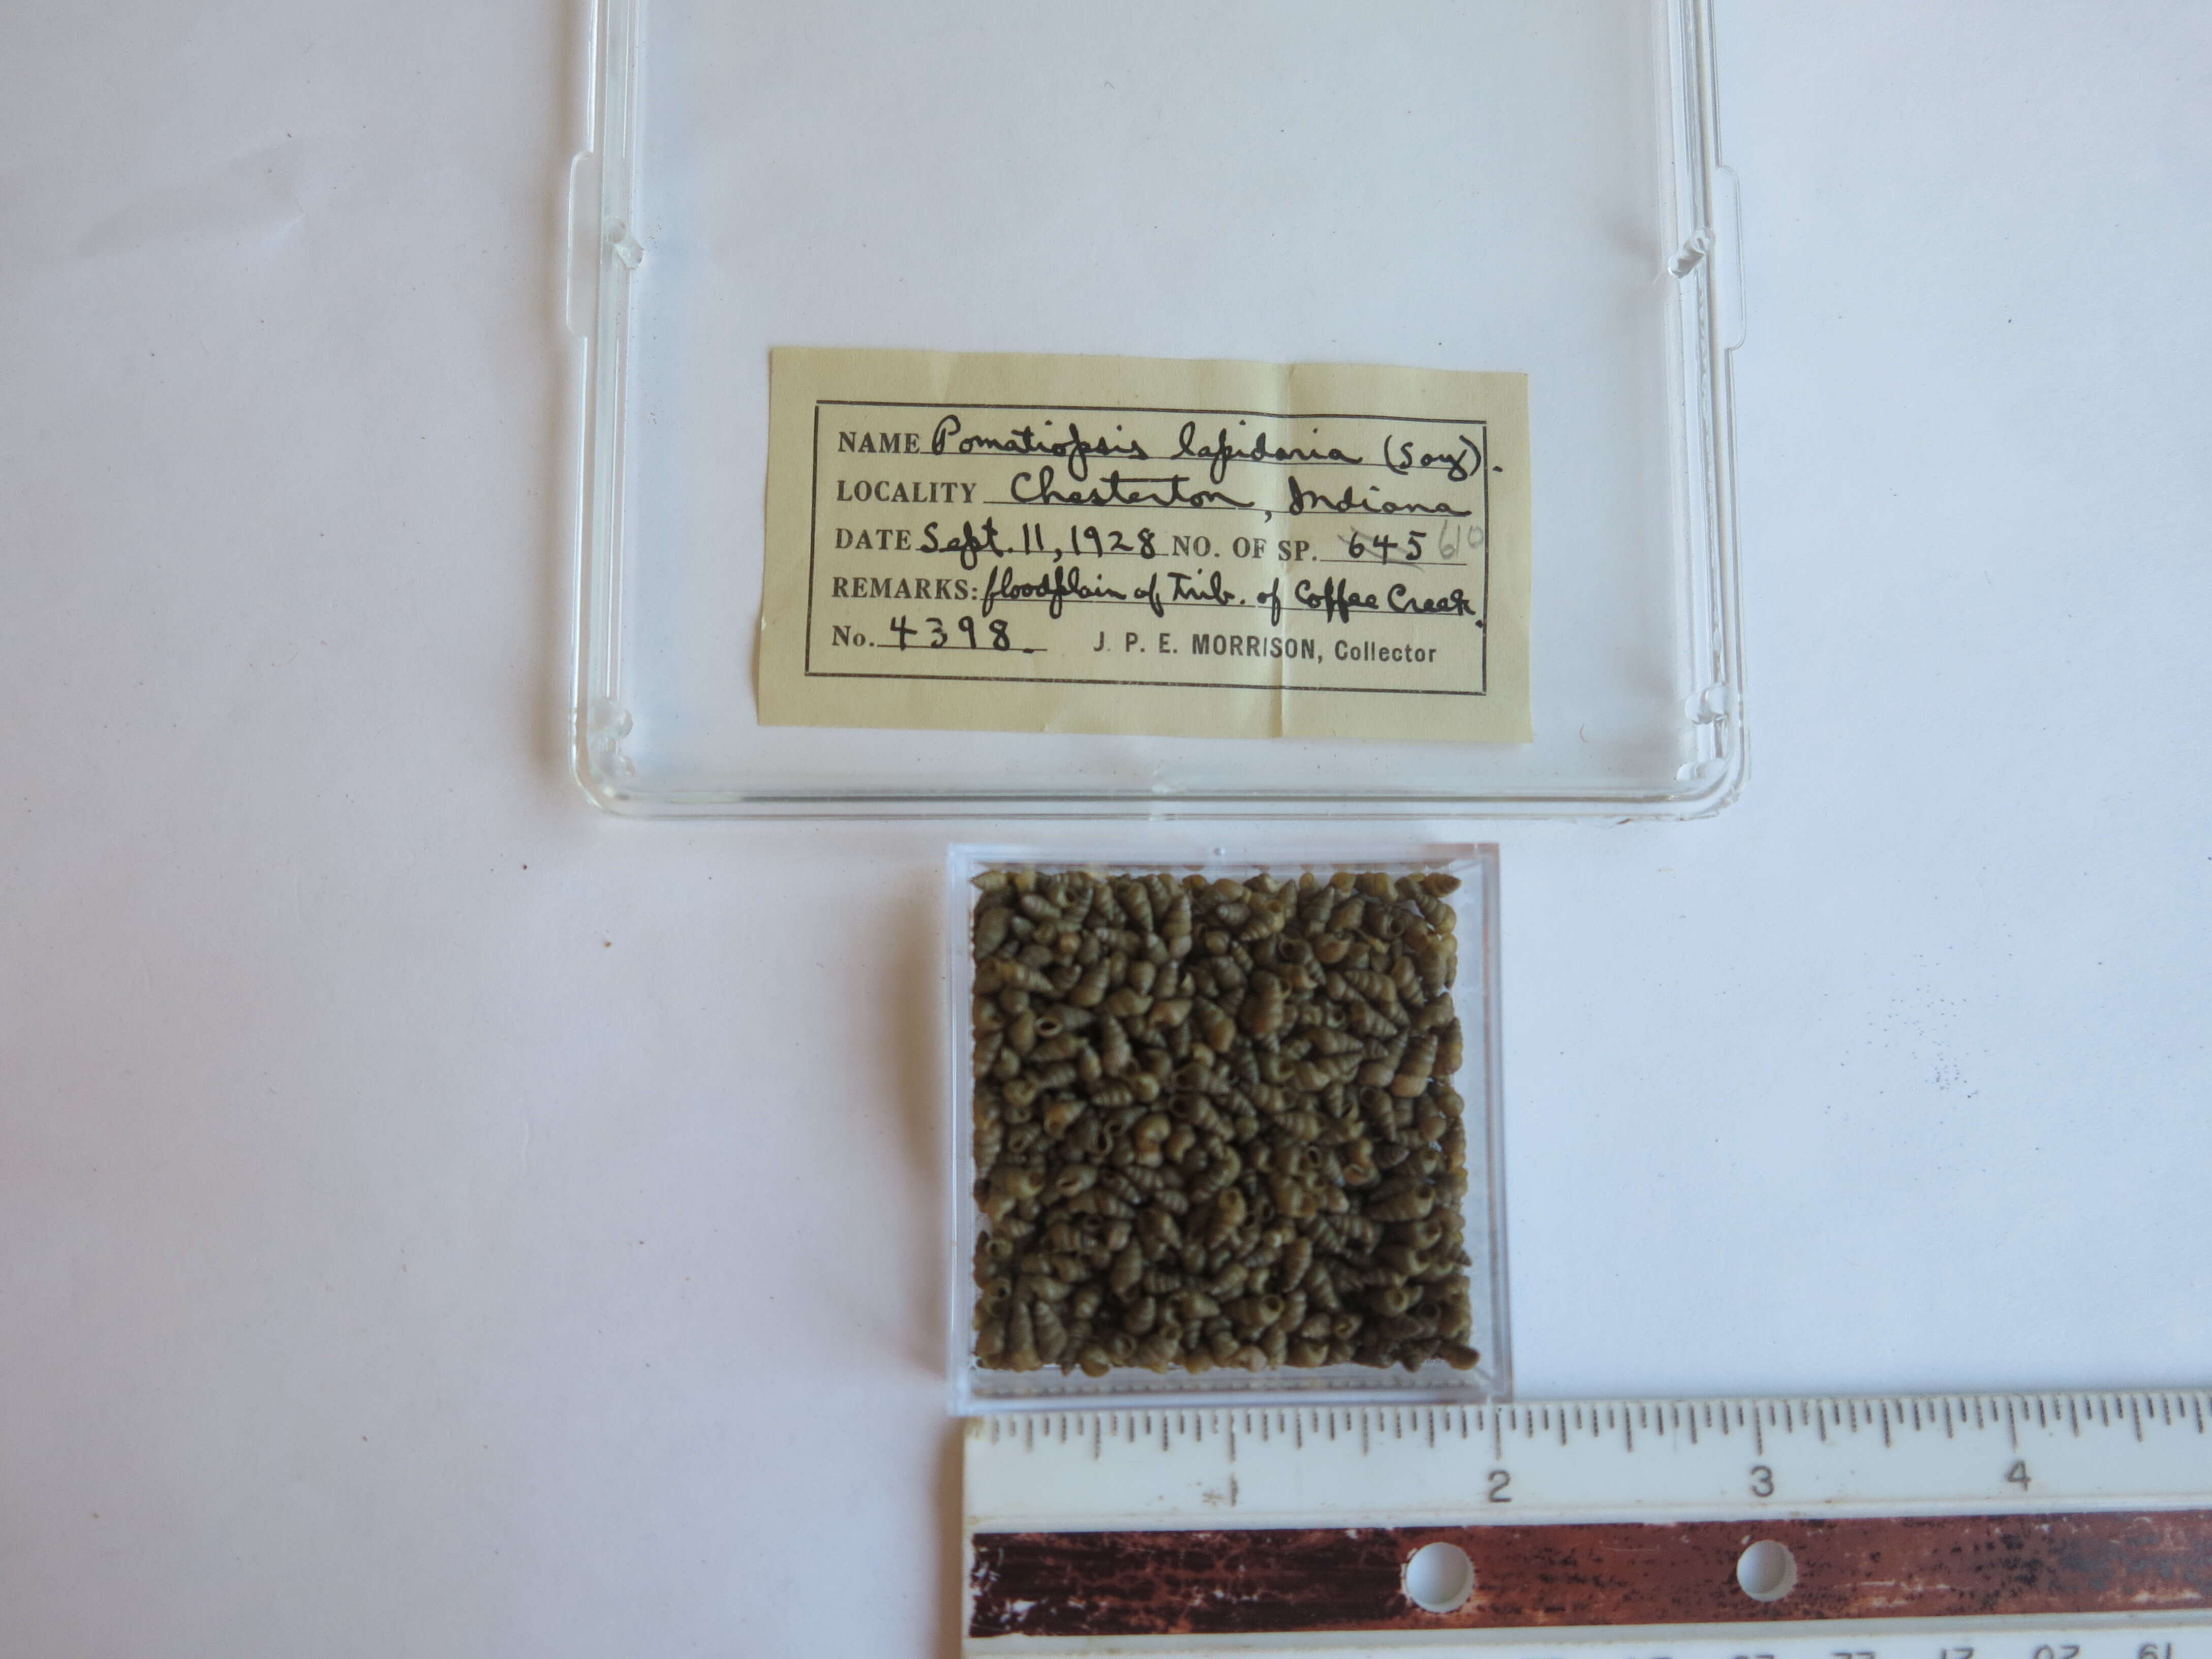 Plancia ëd Pomatiopsis Tryon 1862